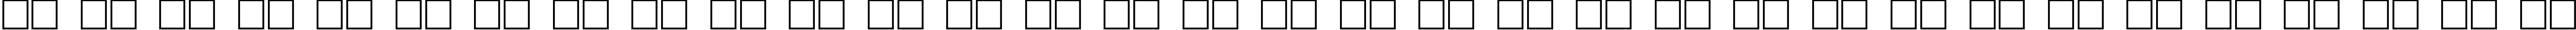 Пример написания русского алфавита шрифтом Aksent